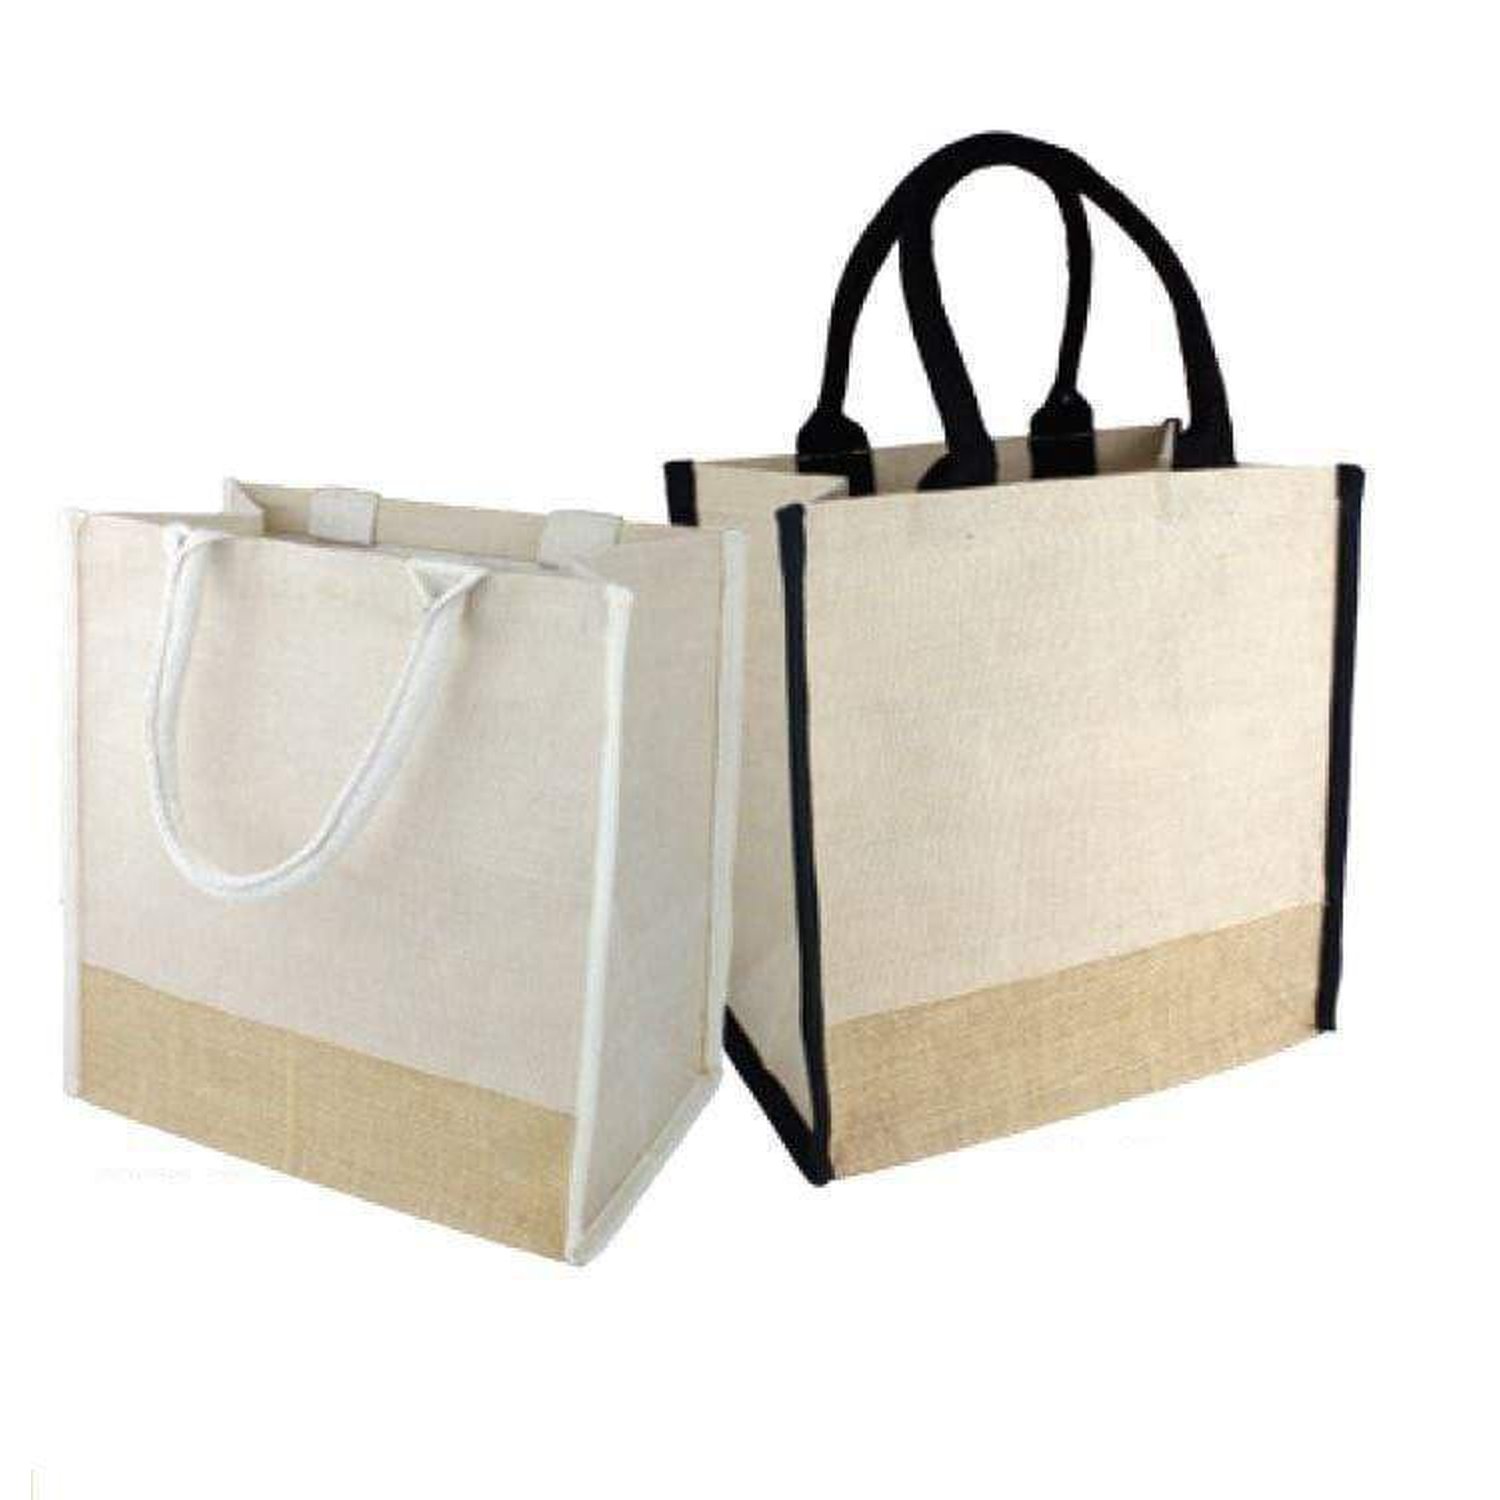 Jute Bags Wholesale Canada | Jute Bags Bulk | HeyJute | Joot Bag